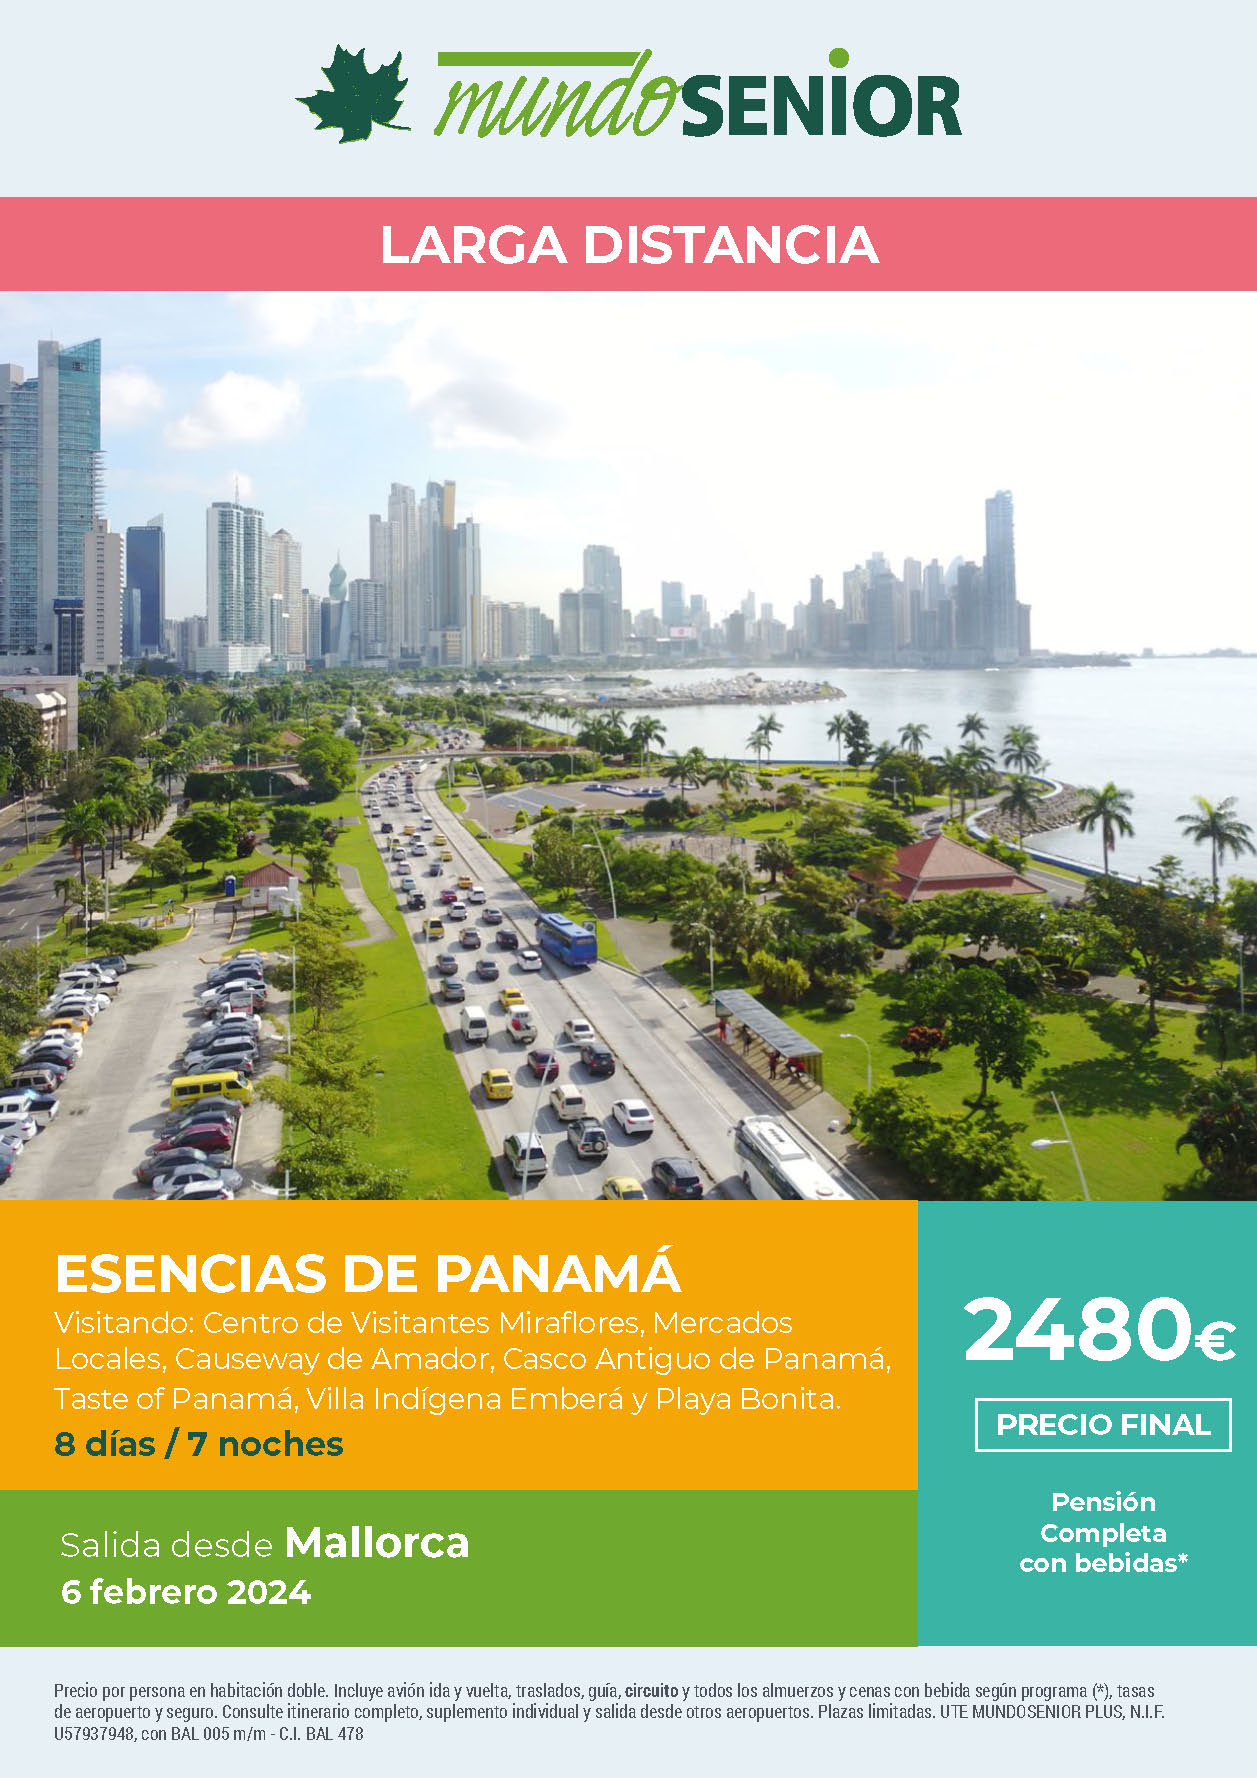 Oferta Mundo Senior circuito Esencias de Panama 8 dias pension completa salida 6 febrero 2024 en vuelo directo desde Mallorca